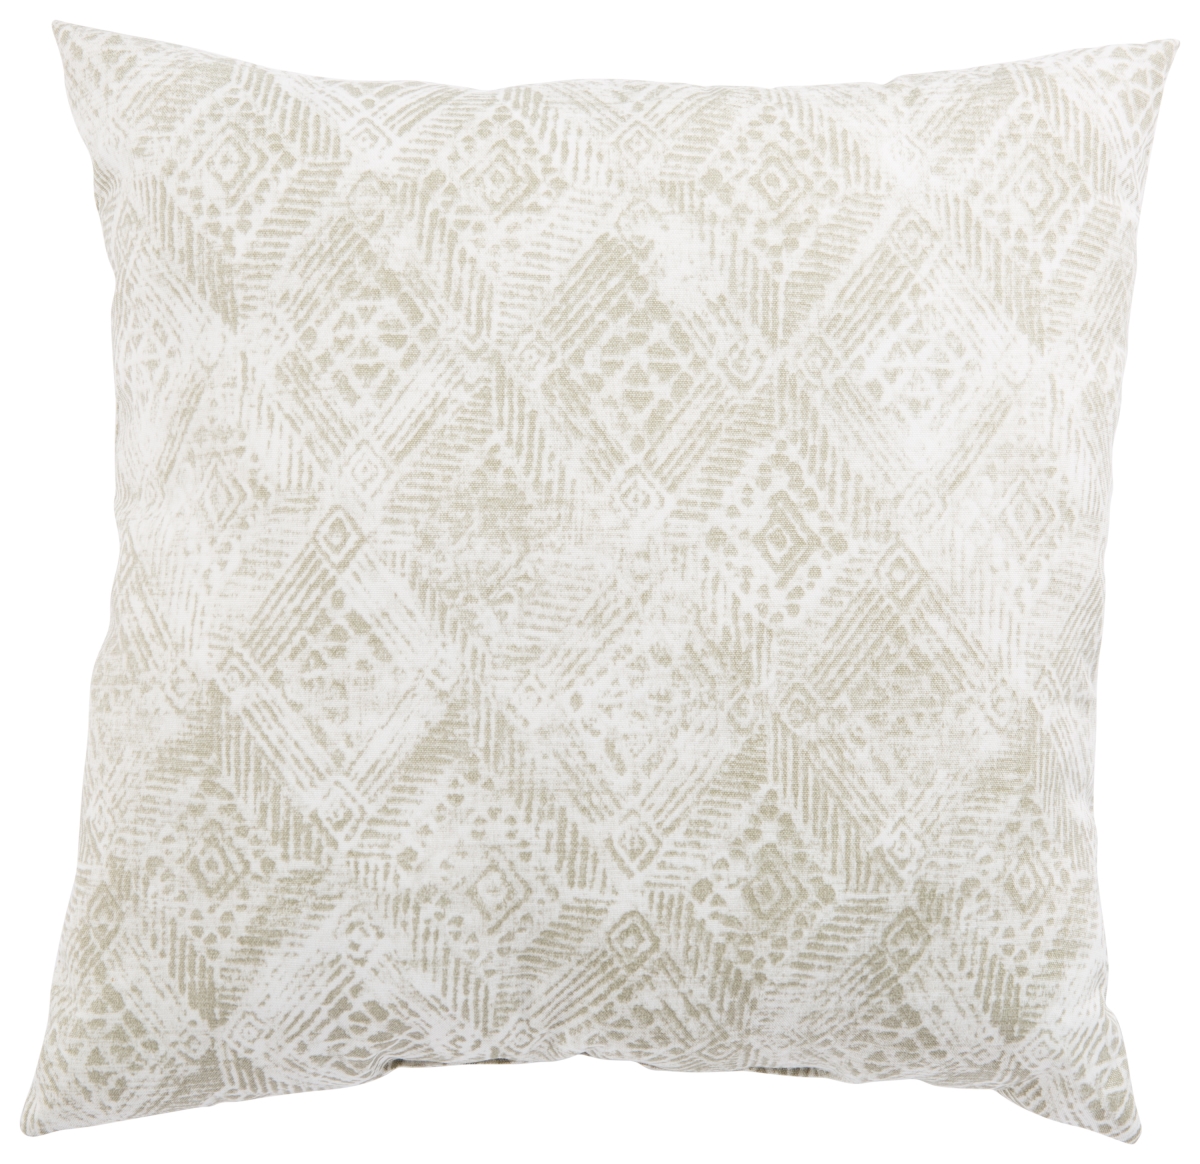 Plp100082 18 X 18 In. Veranda Darrow Fresco Gray & White Ikat Indoor & Outdoor Throw Pillow